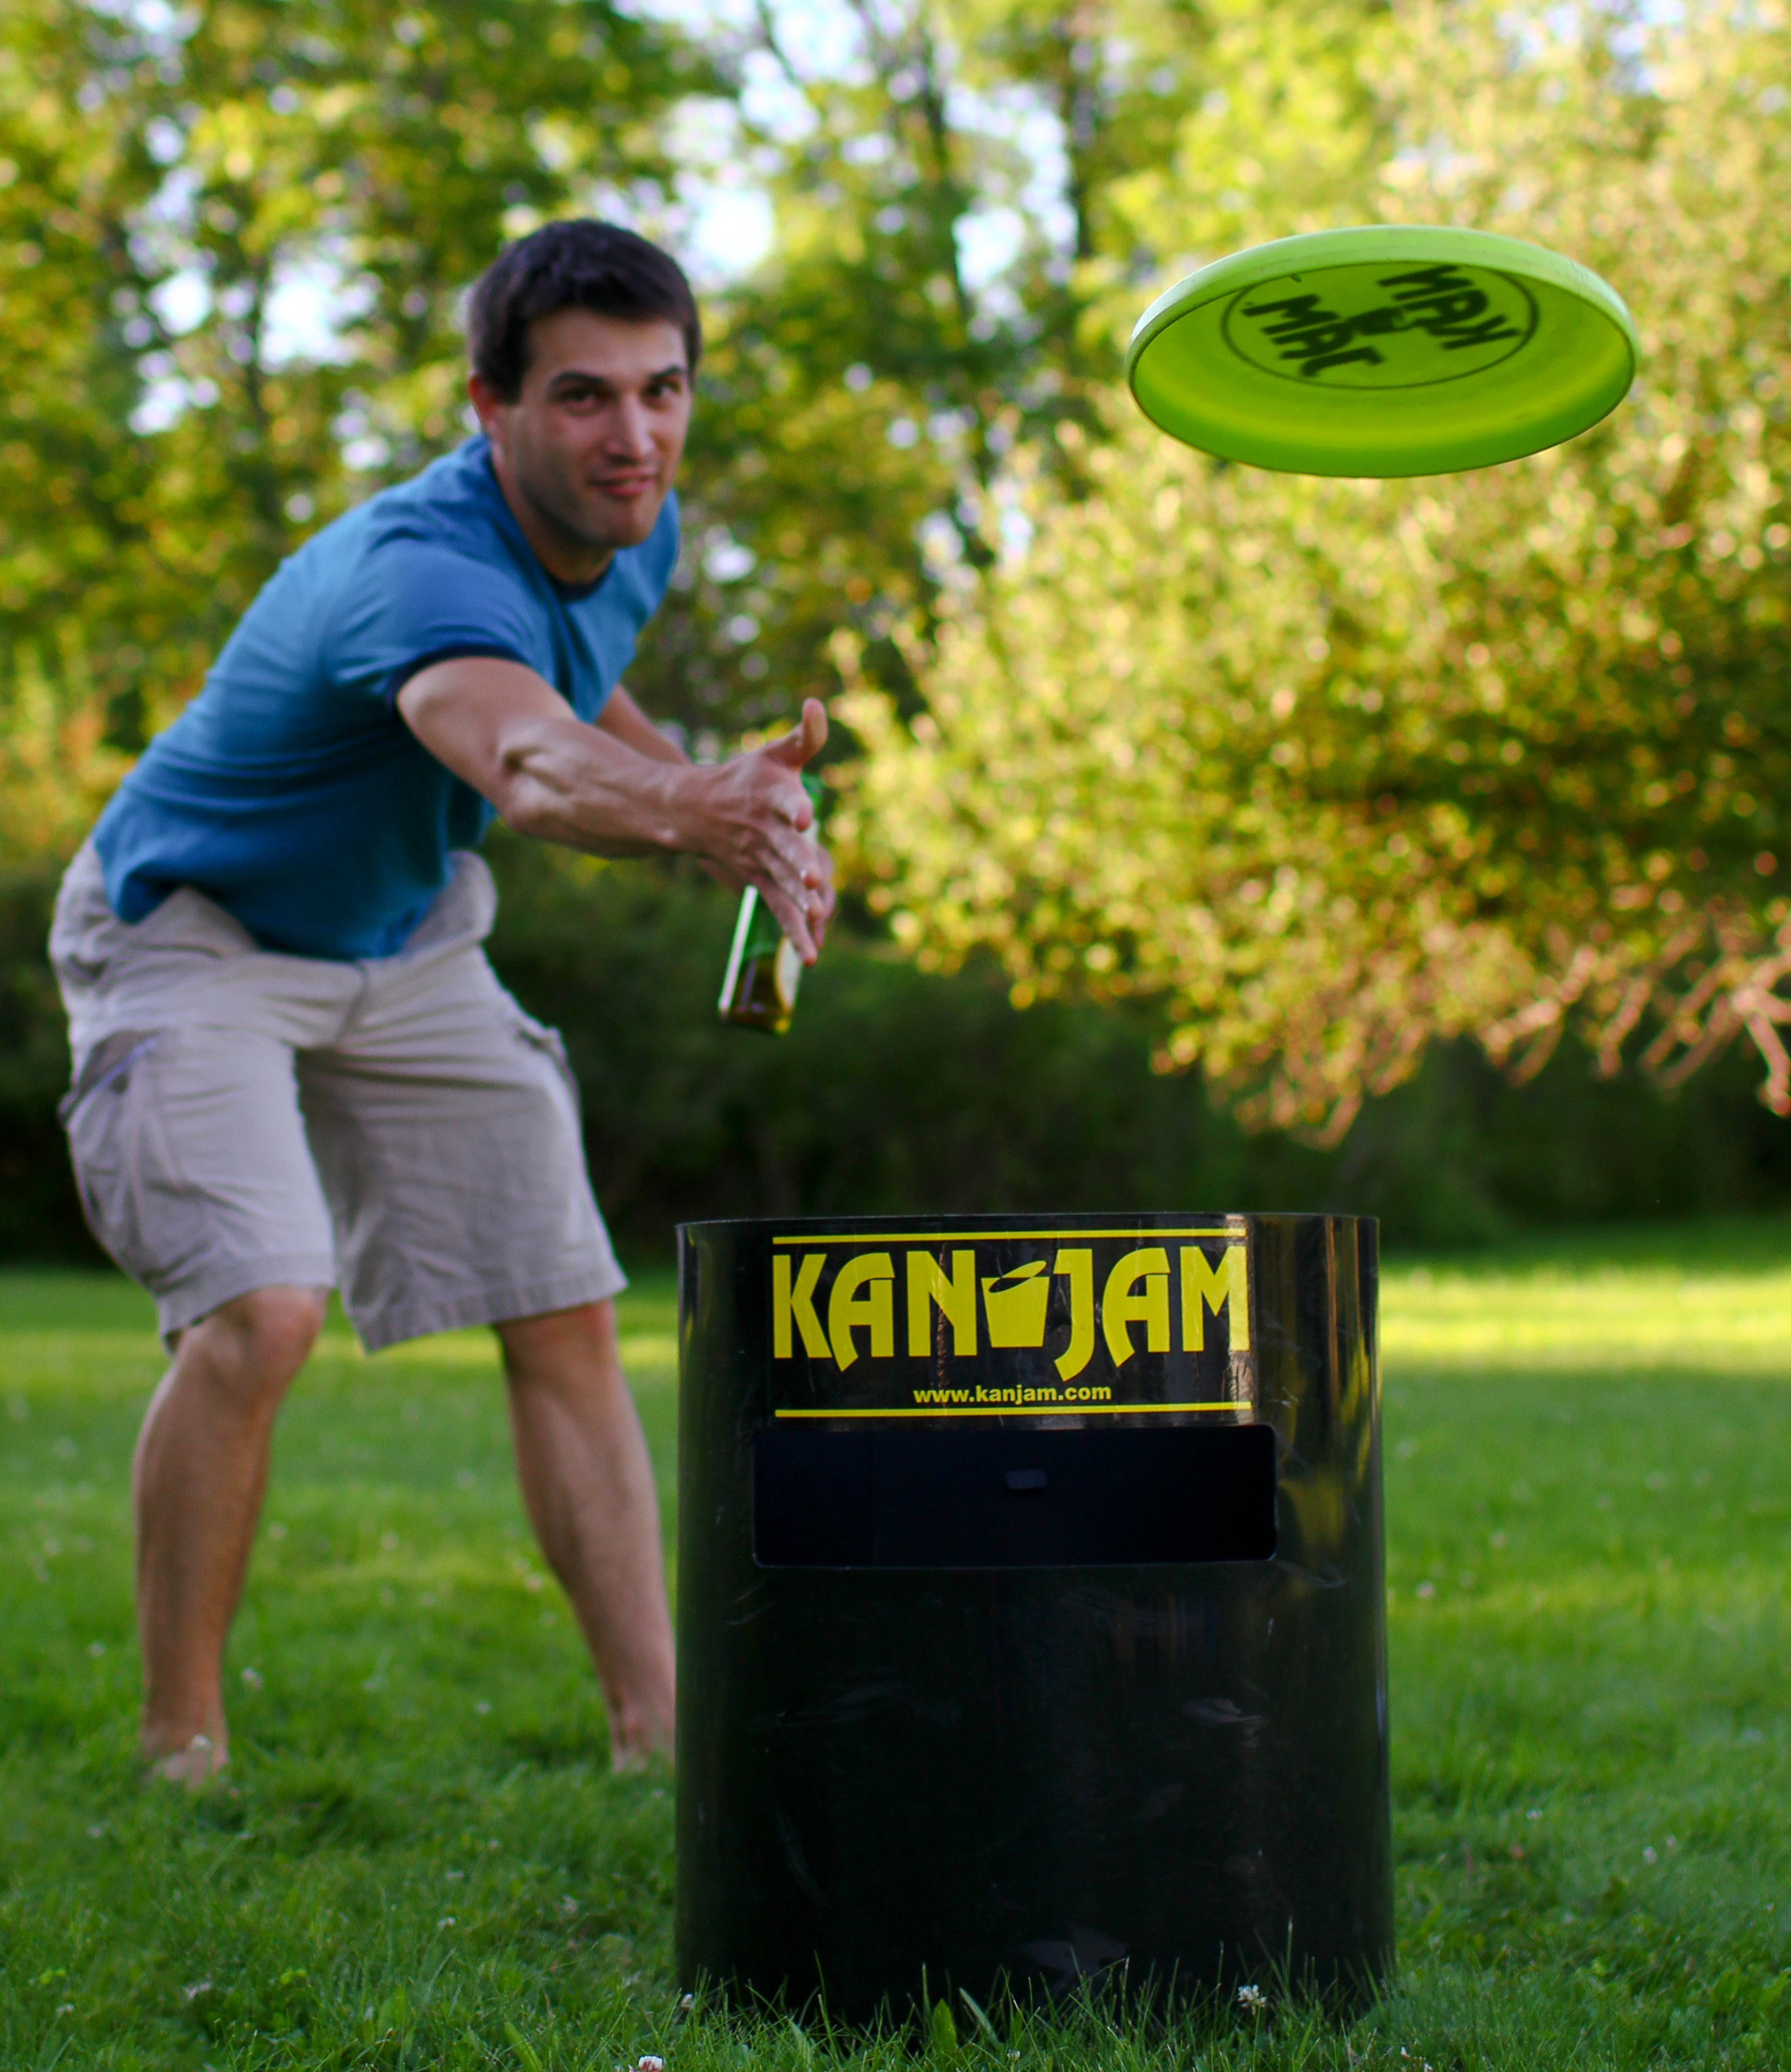 A man playing Kan Jam